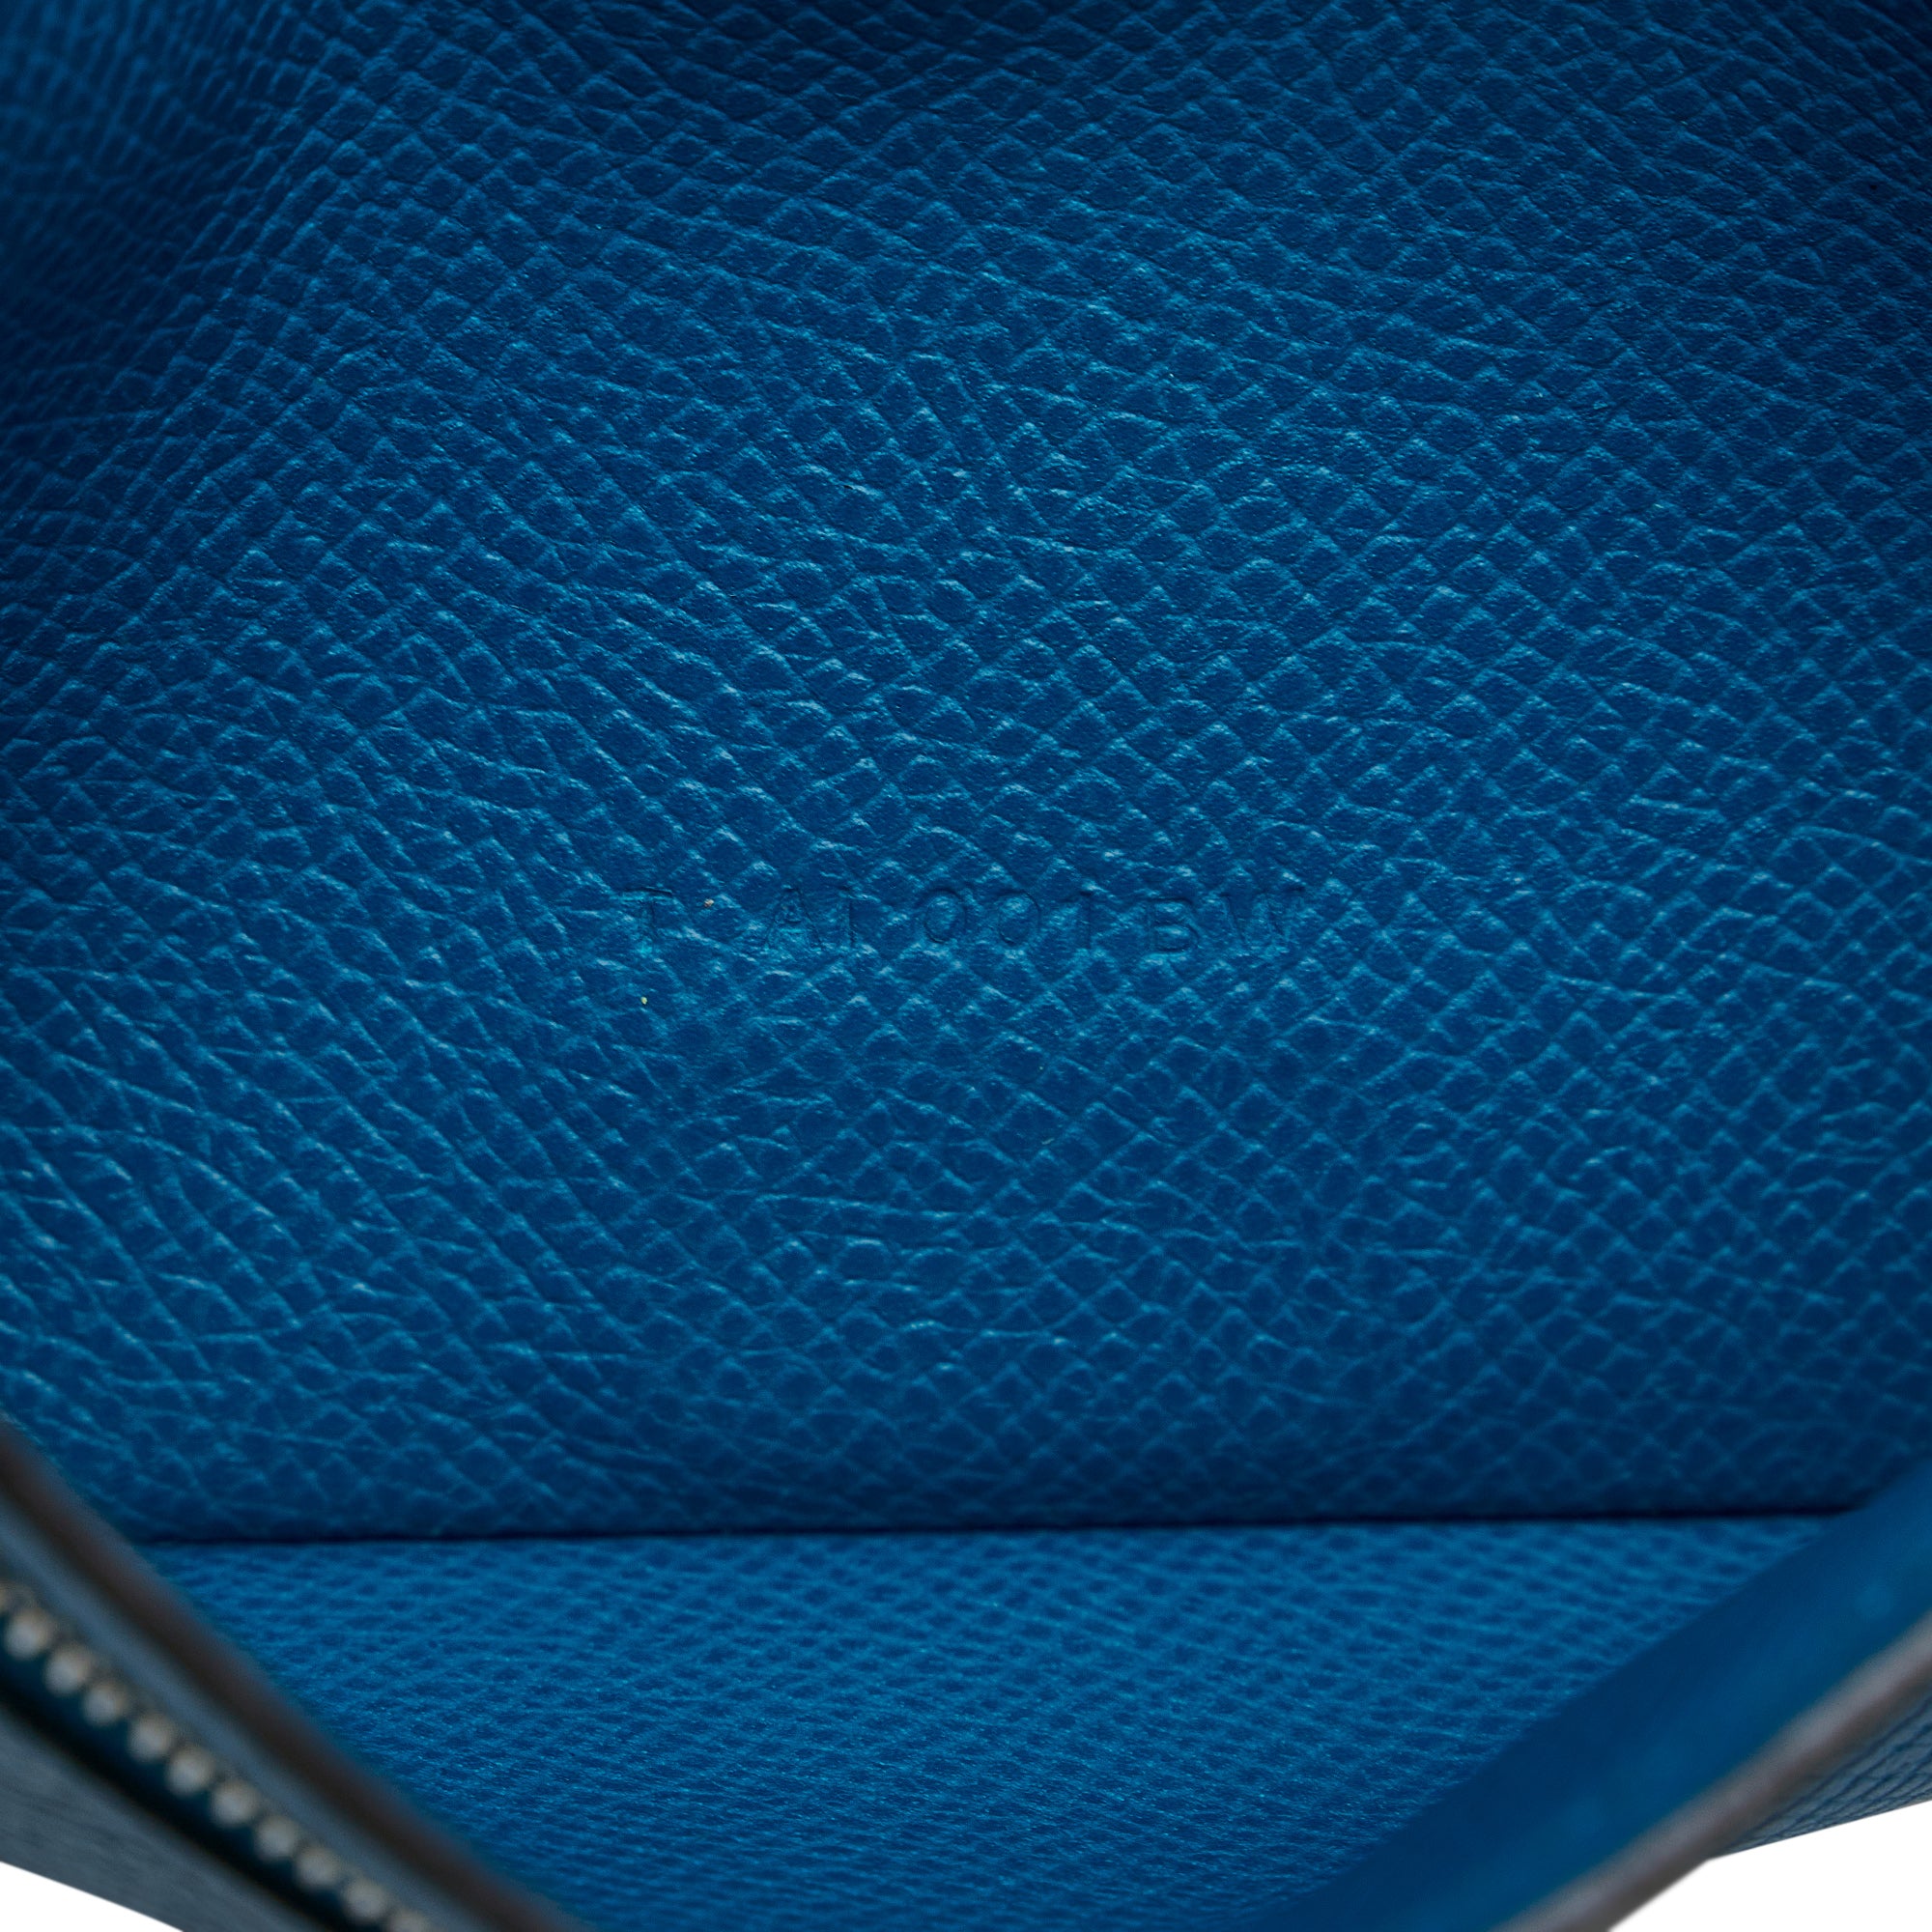 Blue Hermes Epsom Bearn Wallet - Atelier-lumieresShops Revival